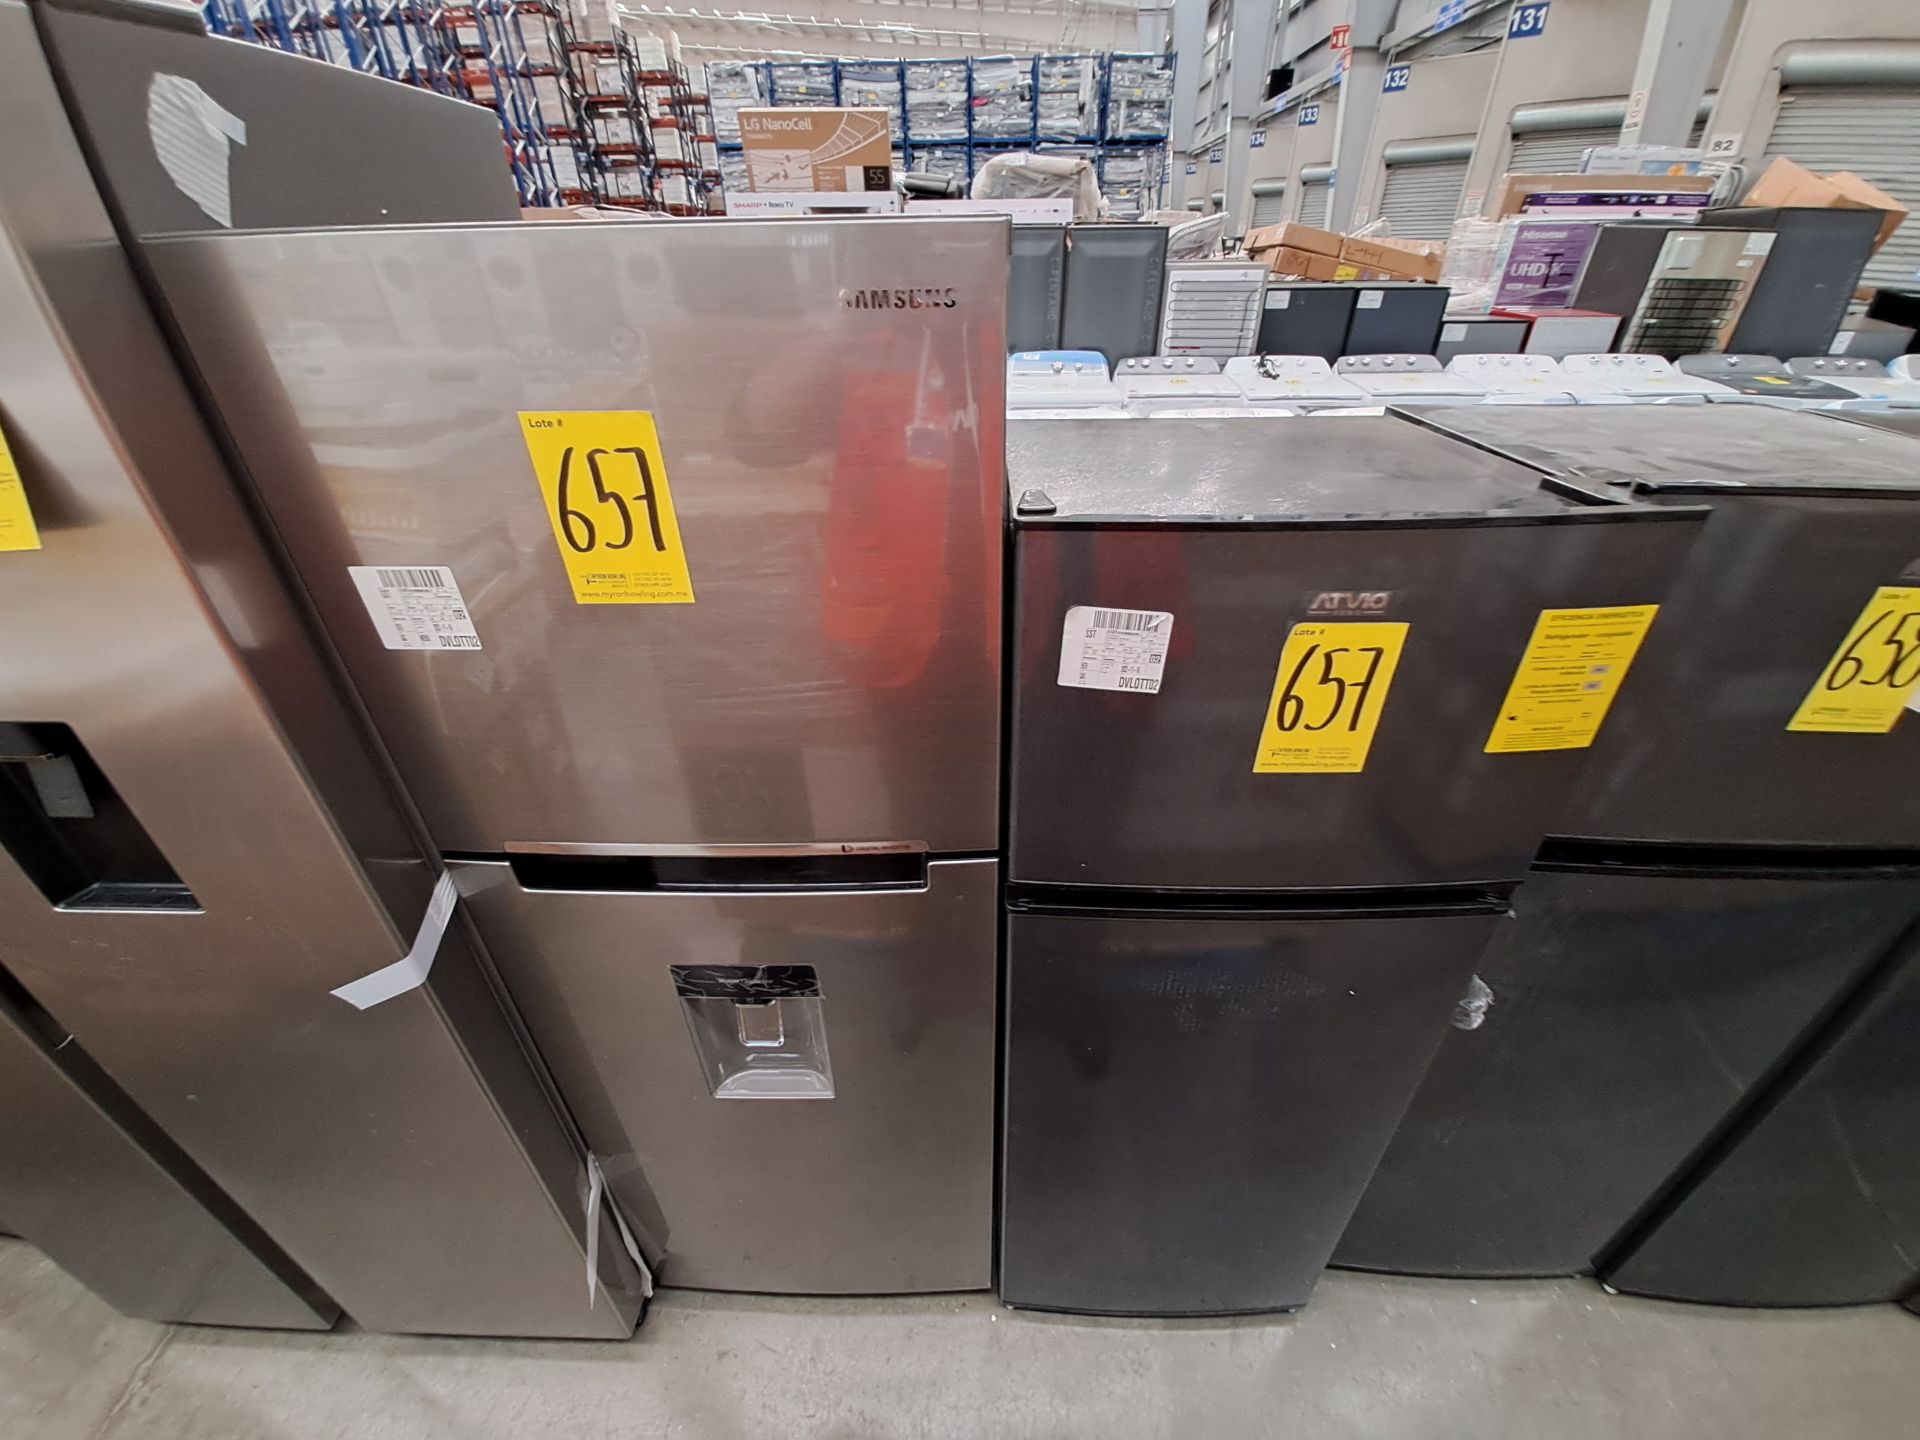 Lote de 2 refrigeradores contiene: 1 Refrigerador con dispensador de agua Marca SAMSUNG, Modelo RT2